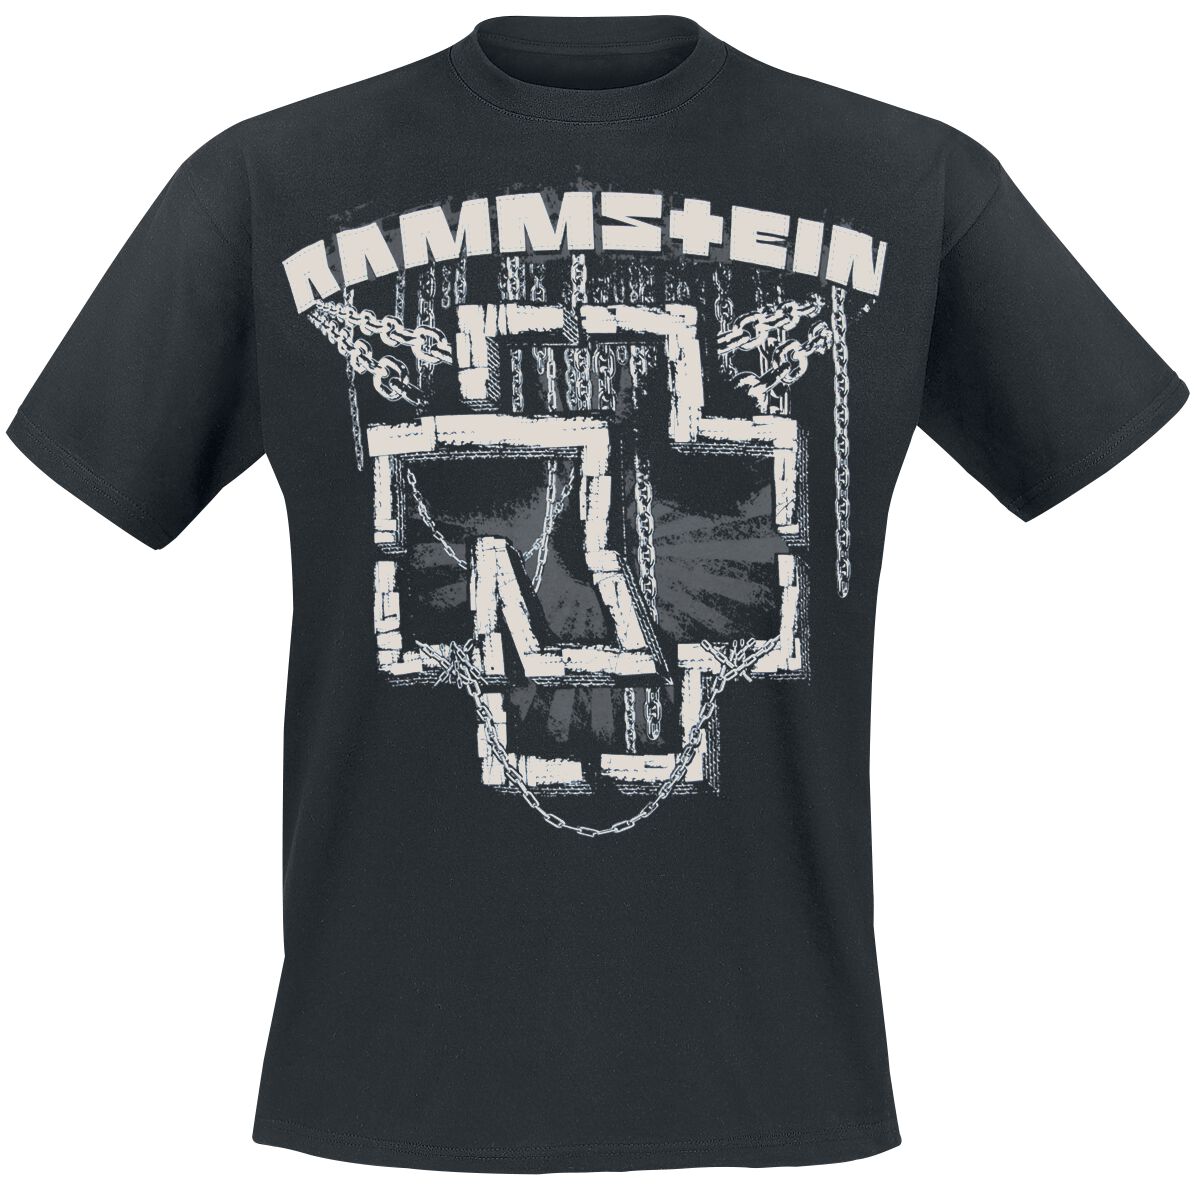 Rammstein T-Shirt - In Ketten - M bis 3XL - für Männer - Größe M - schwarz  - Lizenziertes Merchandise!